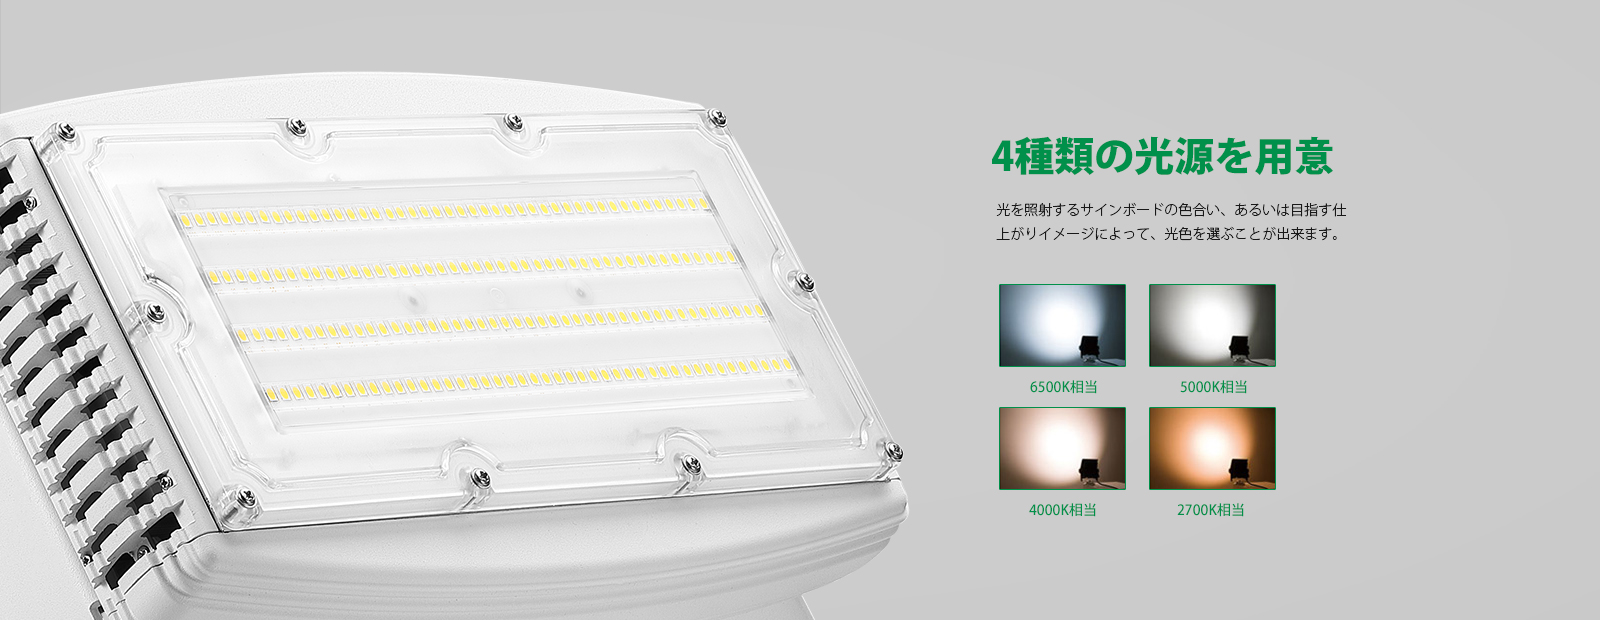 LED投光器 BS-F01B100W